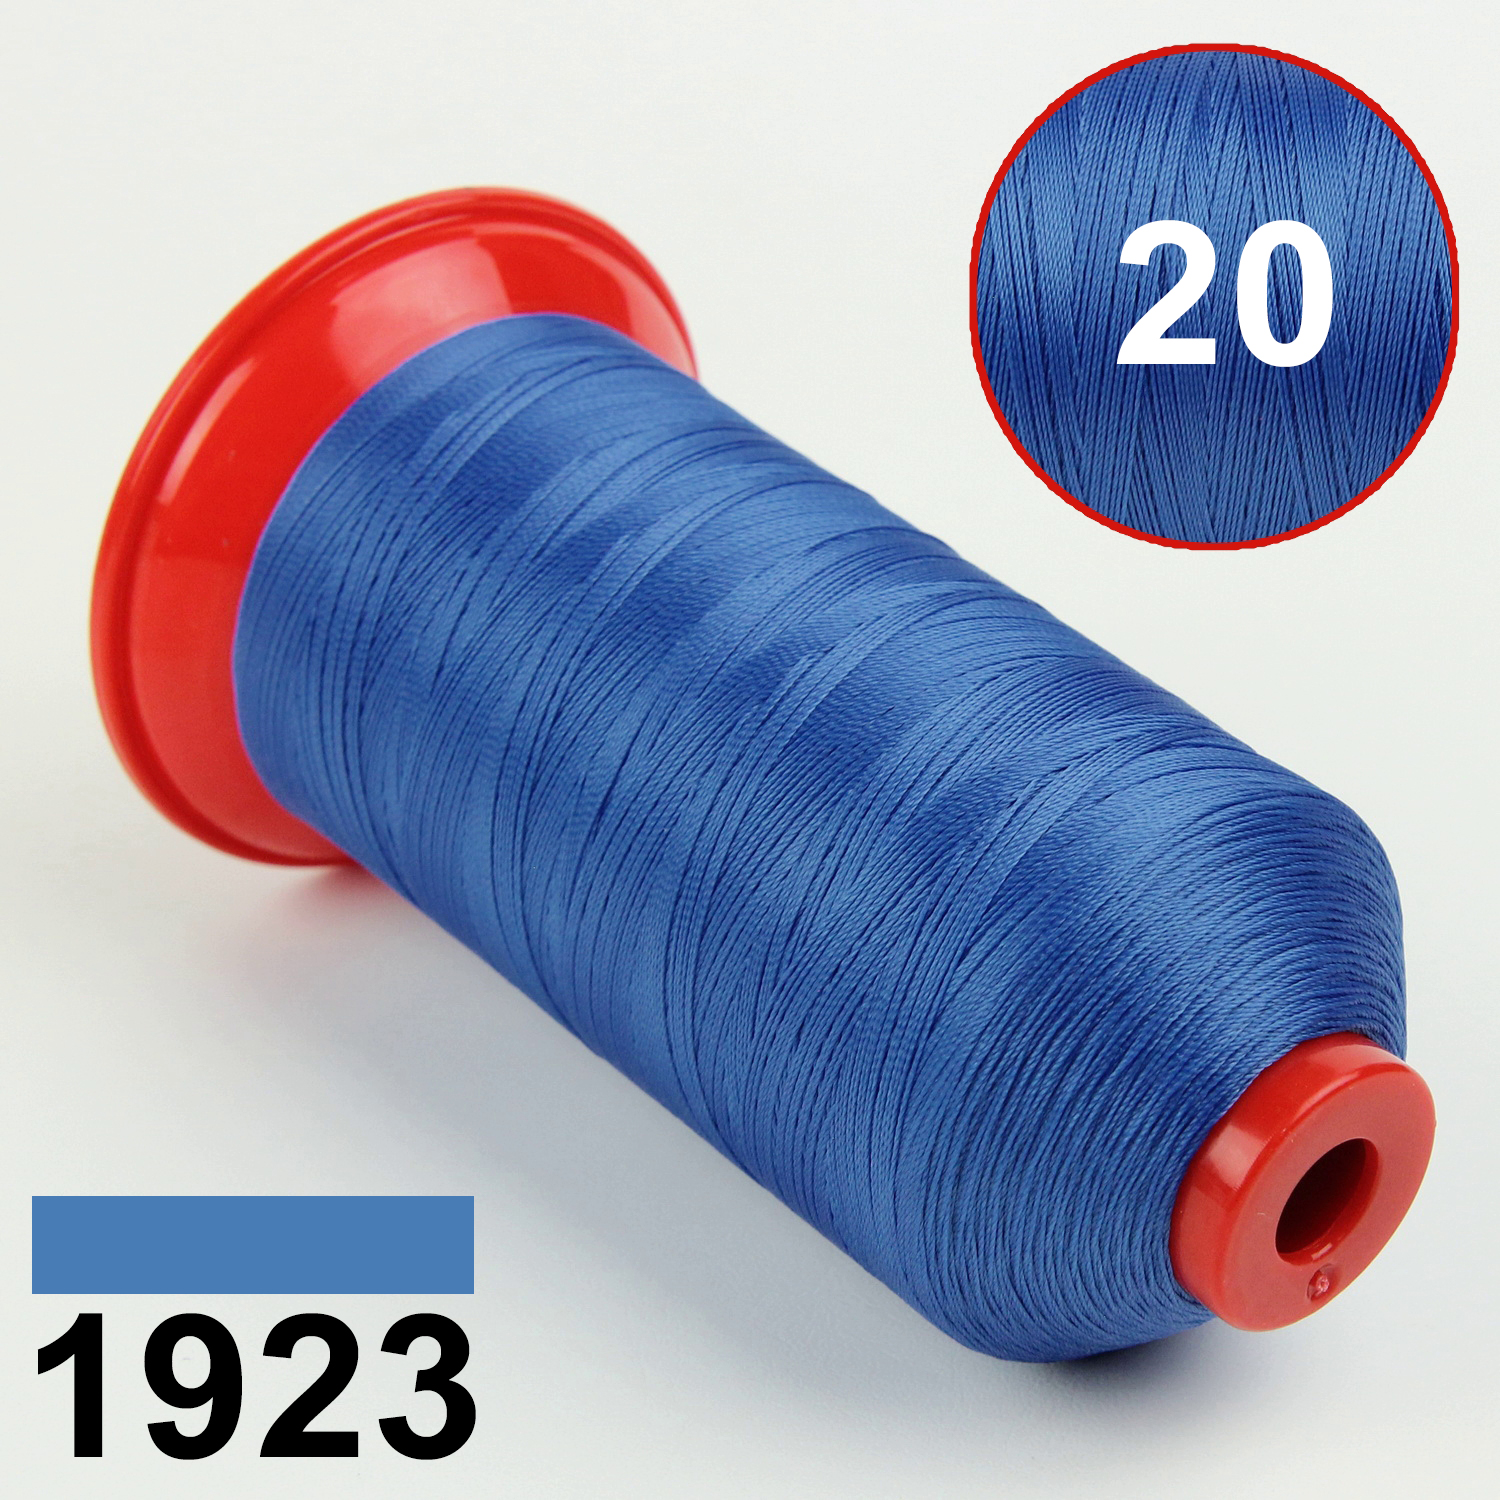 Нить POLYART(ПОЛИАРТ) N20 цвет 1923 синий, для пошив чехлов на автомобильные сидения и руль, 1500м детальная фотка